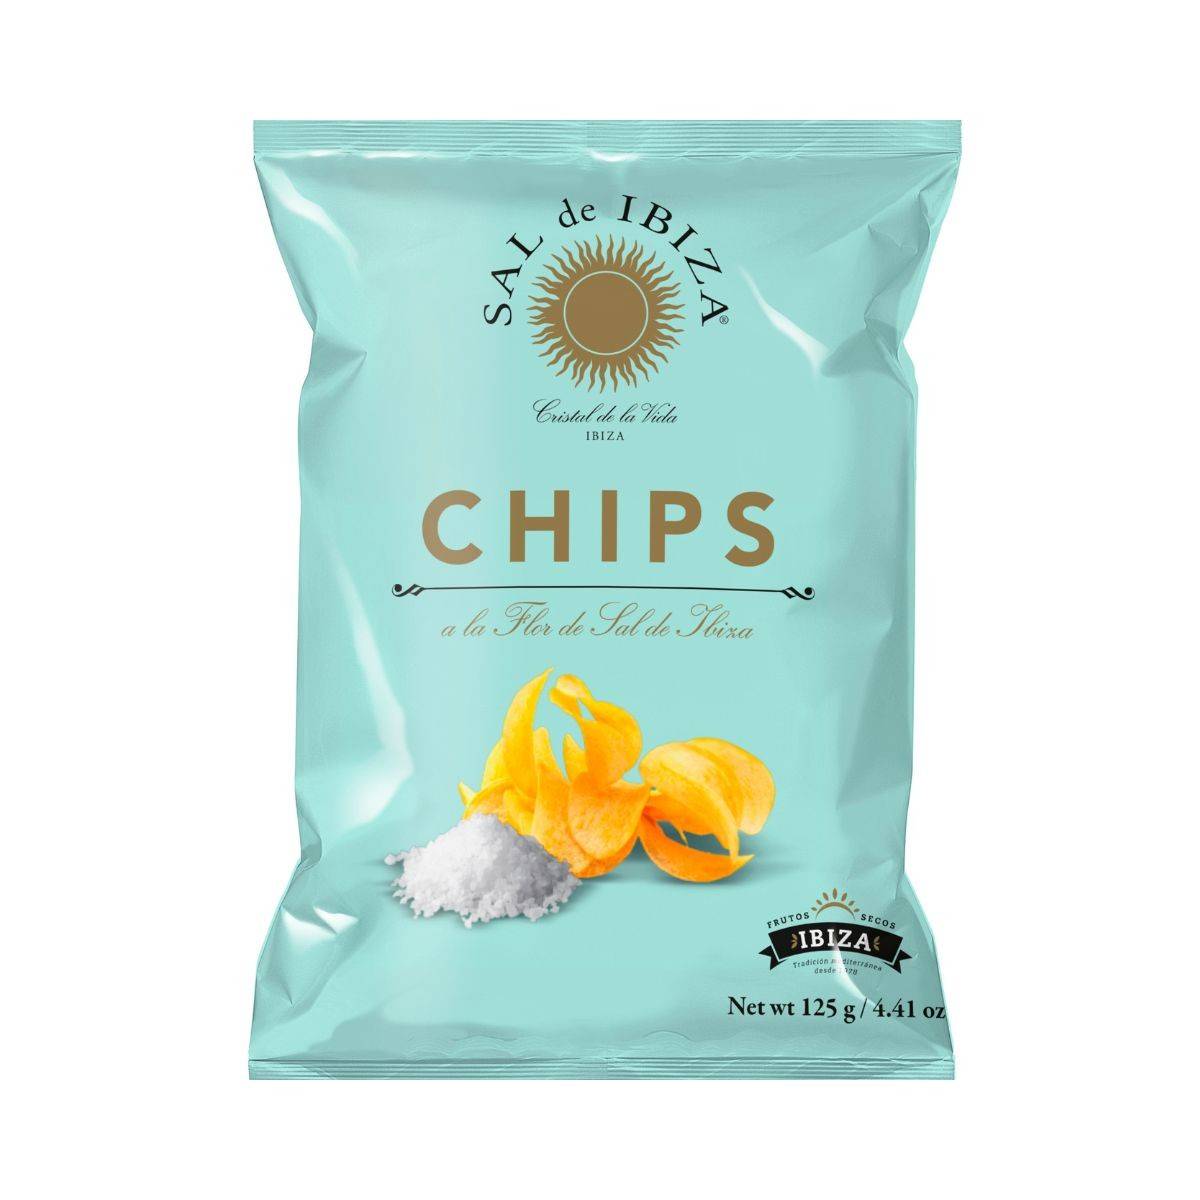 patatas-chips-a-la-flor-sal-de-ibiza-001.jpg